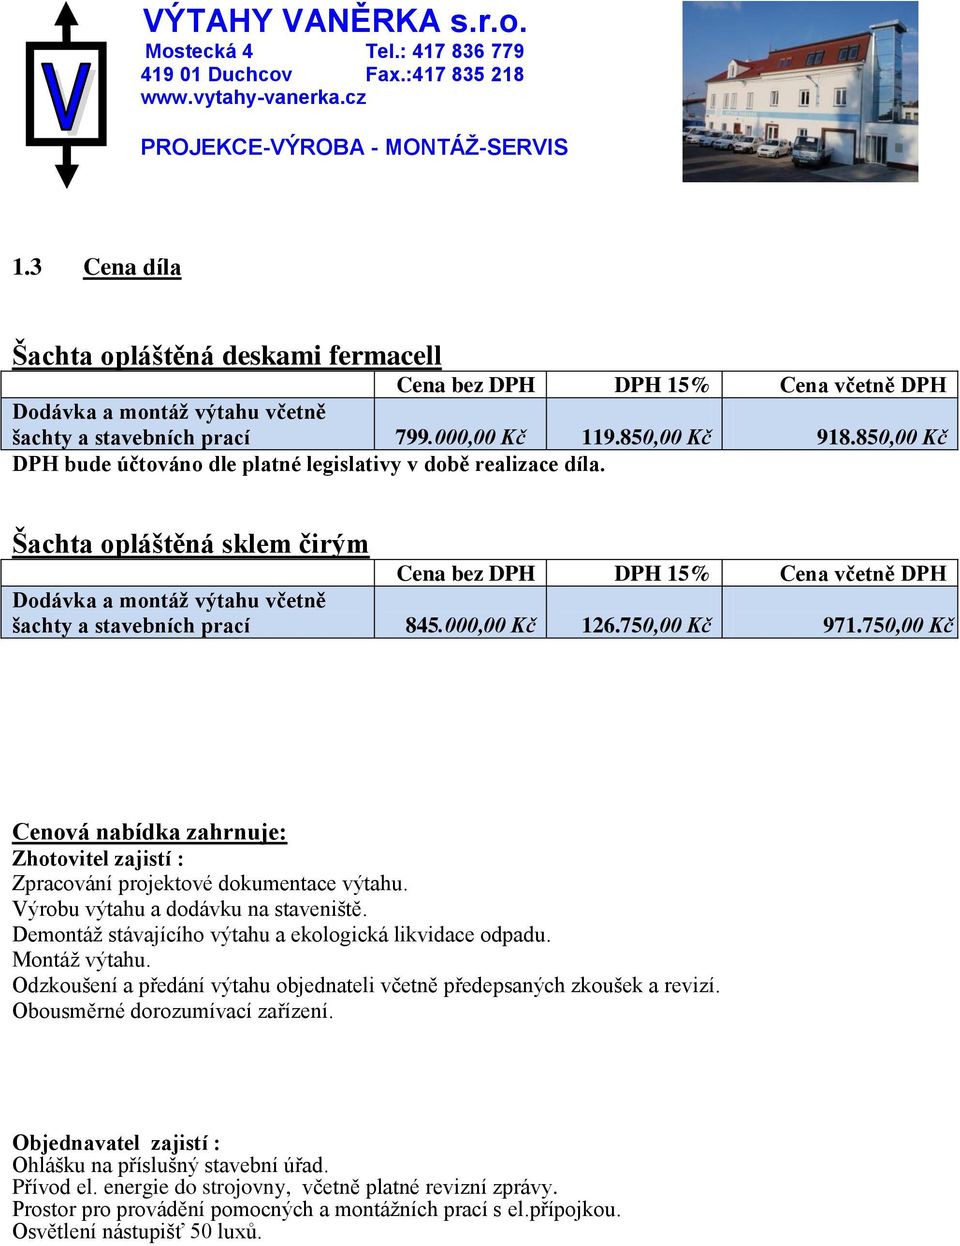 Šachta opláštěná sklem čirým Cena bez DPH DPH 15% Cena včetně DPH Dodávka a montáž výtahu včetně šachty a stavebních prací 845.000,00 Kč 126.750,00 Kč 971.